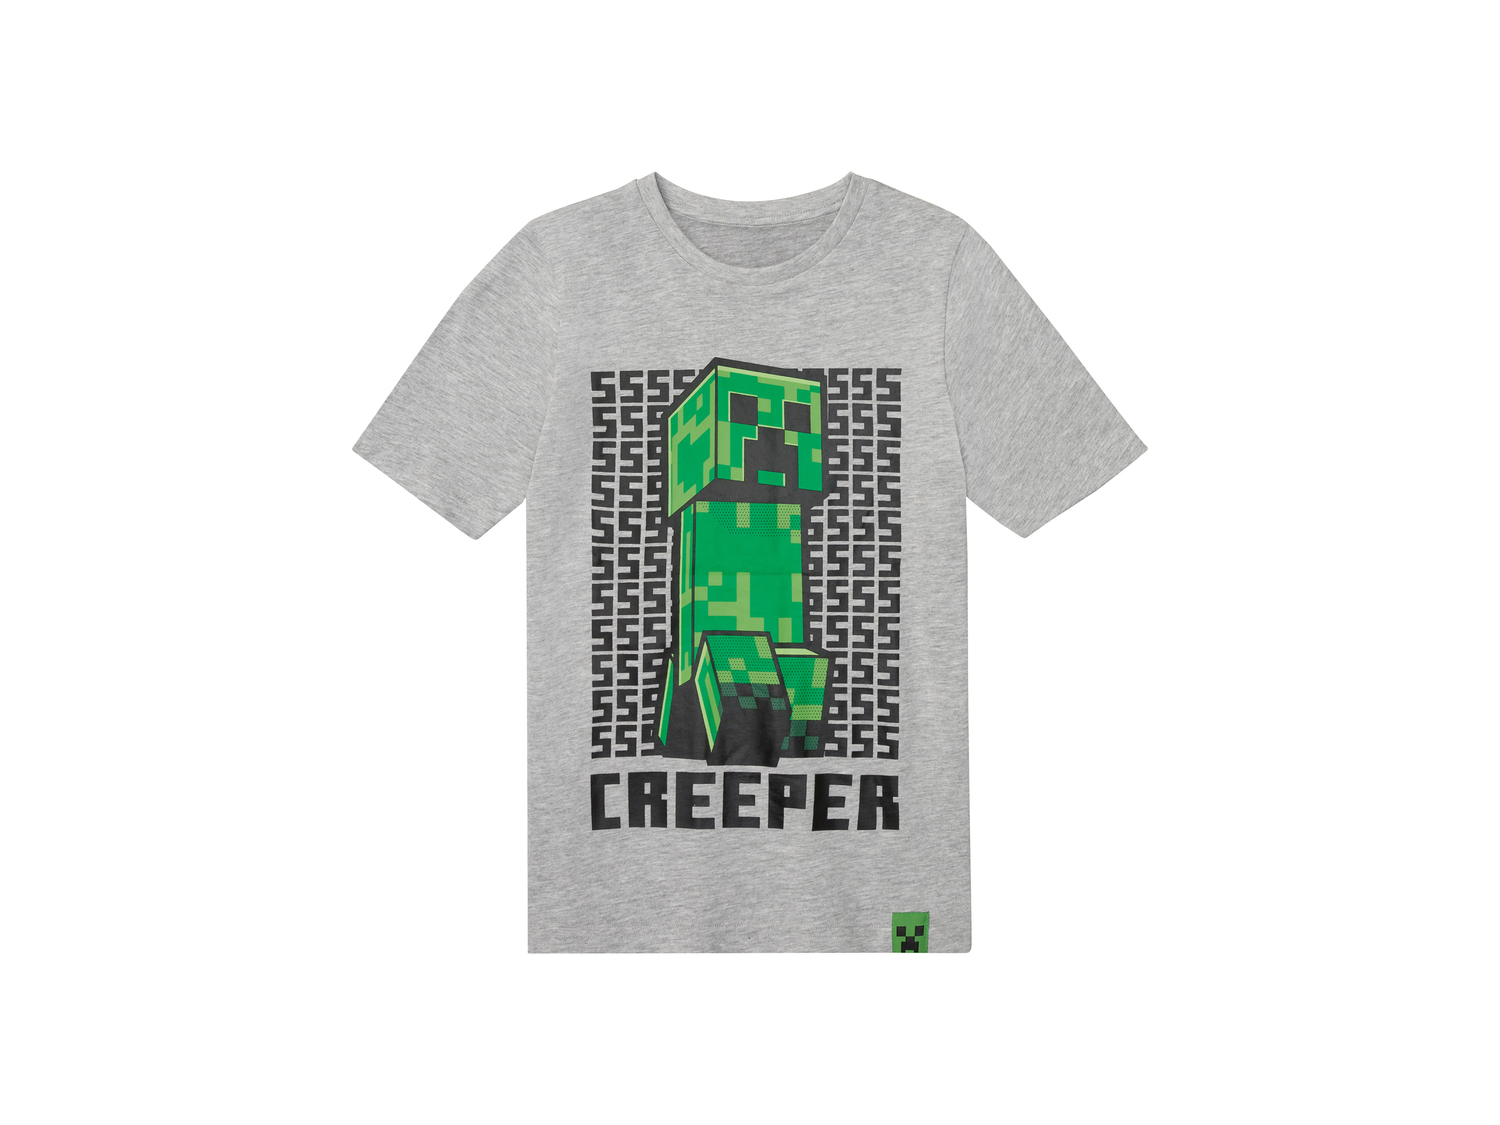 T-shirt da bambino Minecraft, prezzo 6.99 &#8364; 
Misure: 2-10 anni
Taglie ...